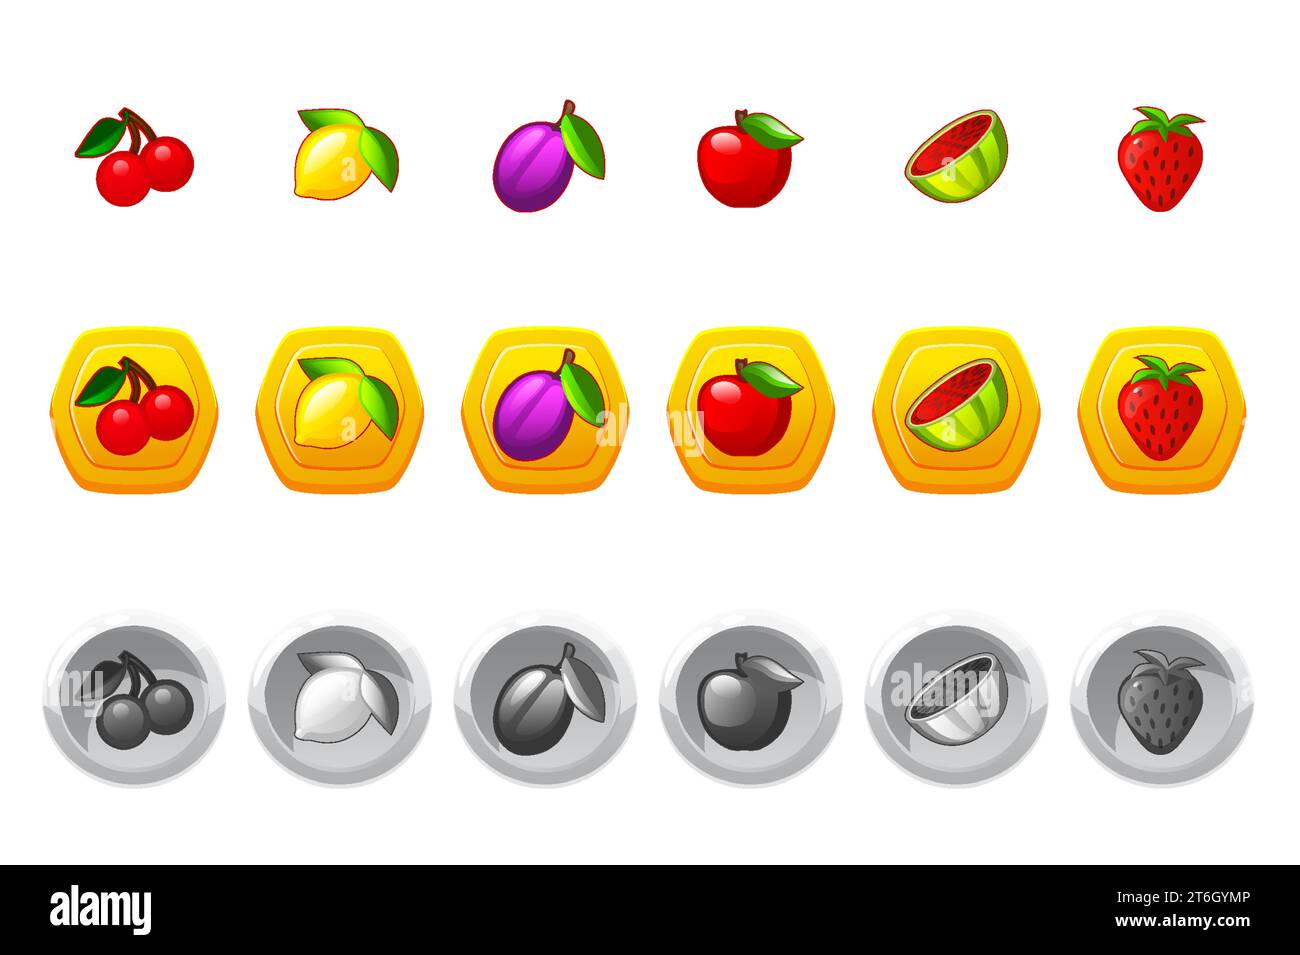 Juegos de Slot con Símbolos de Frutas